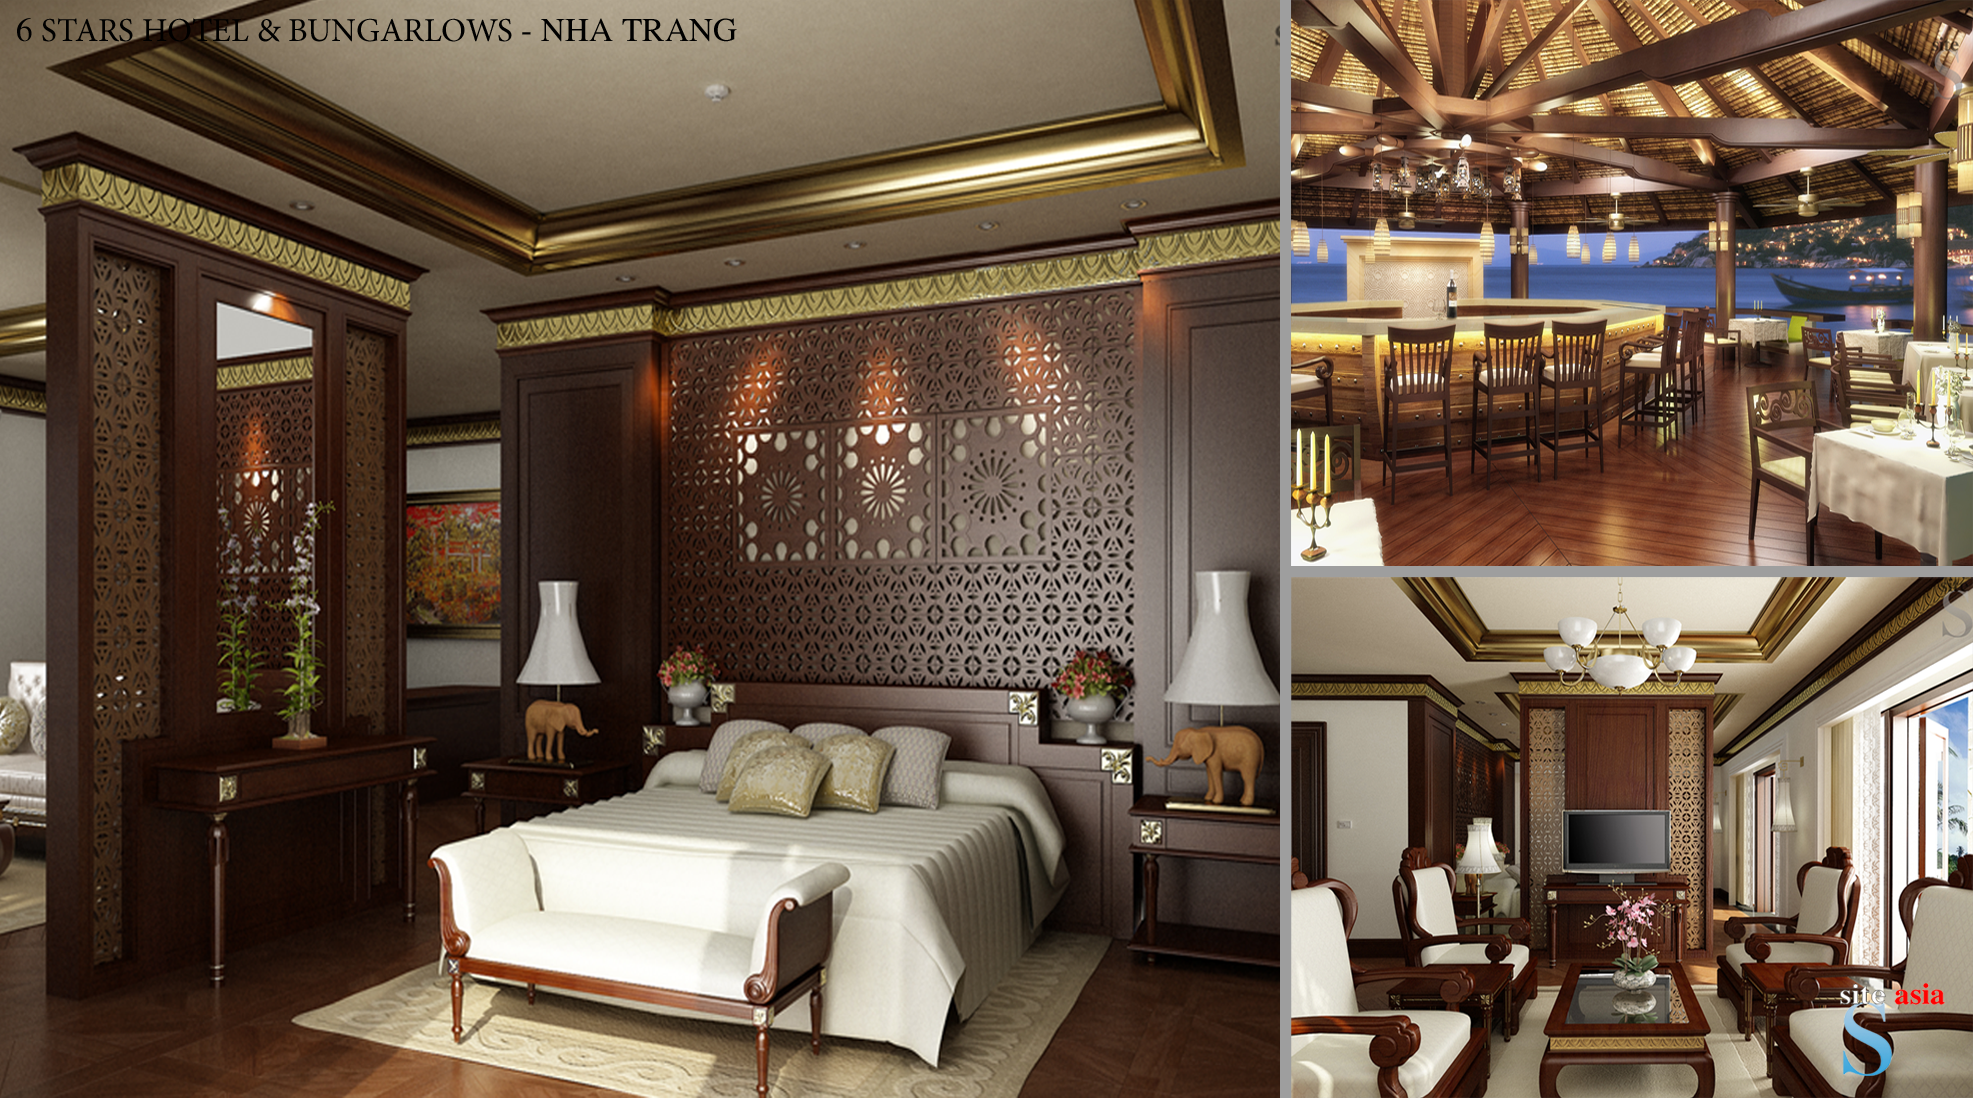 Khách sạn 6 sao, Nha Trang